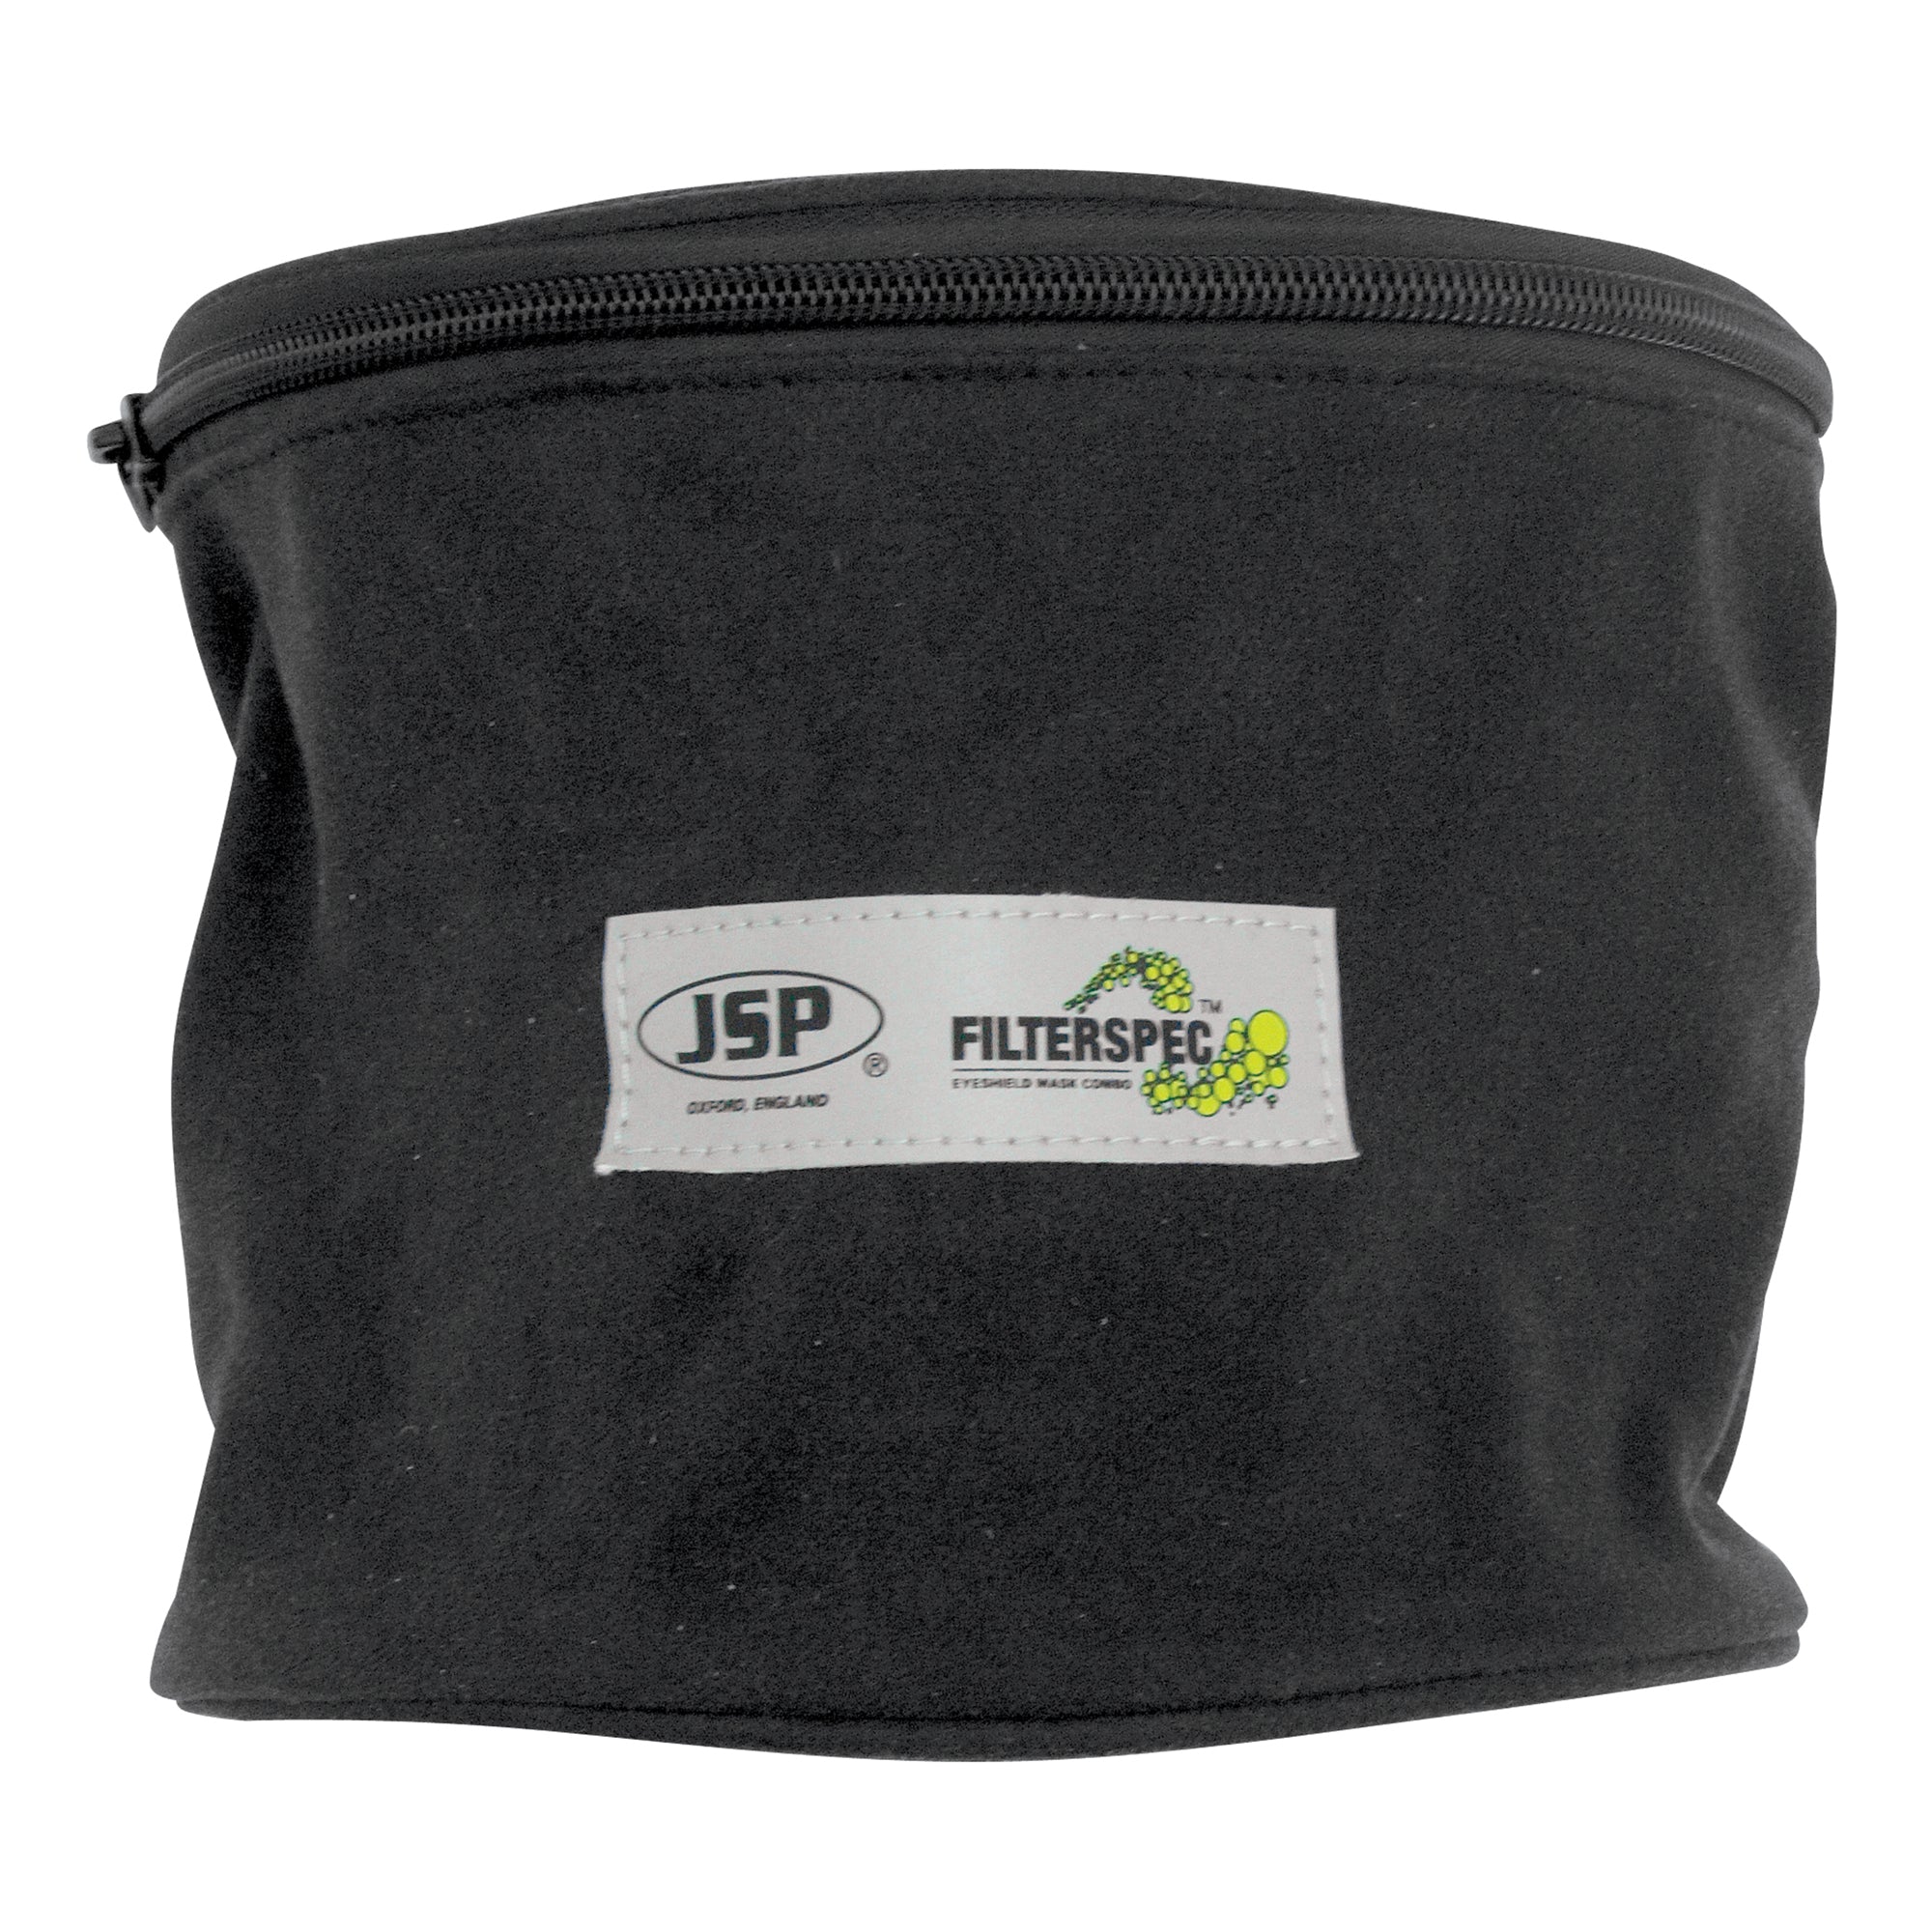 JSP Filterspec® Case